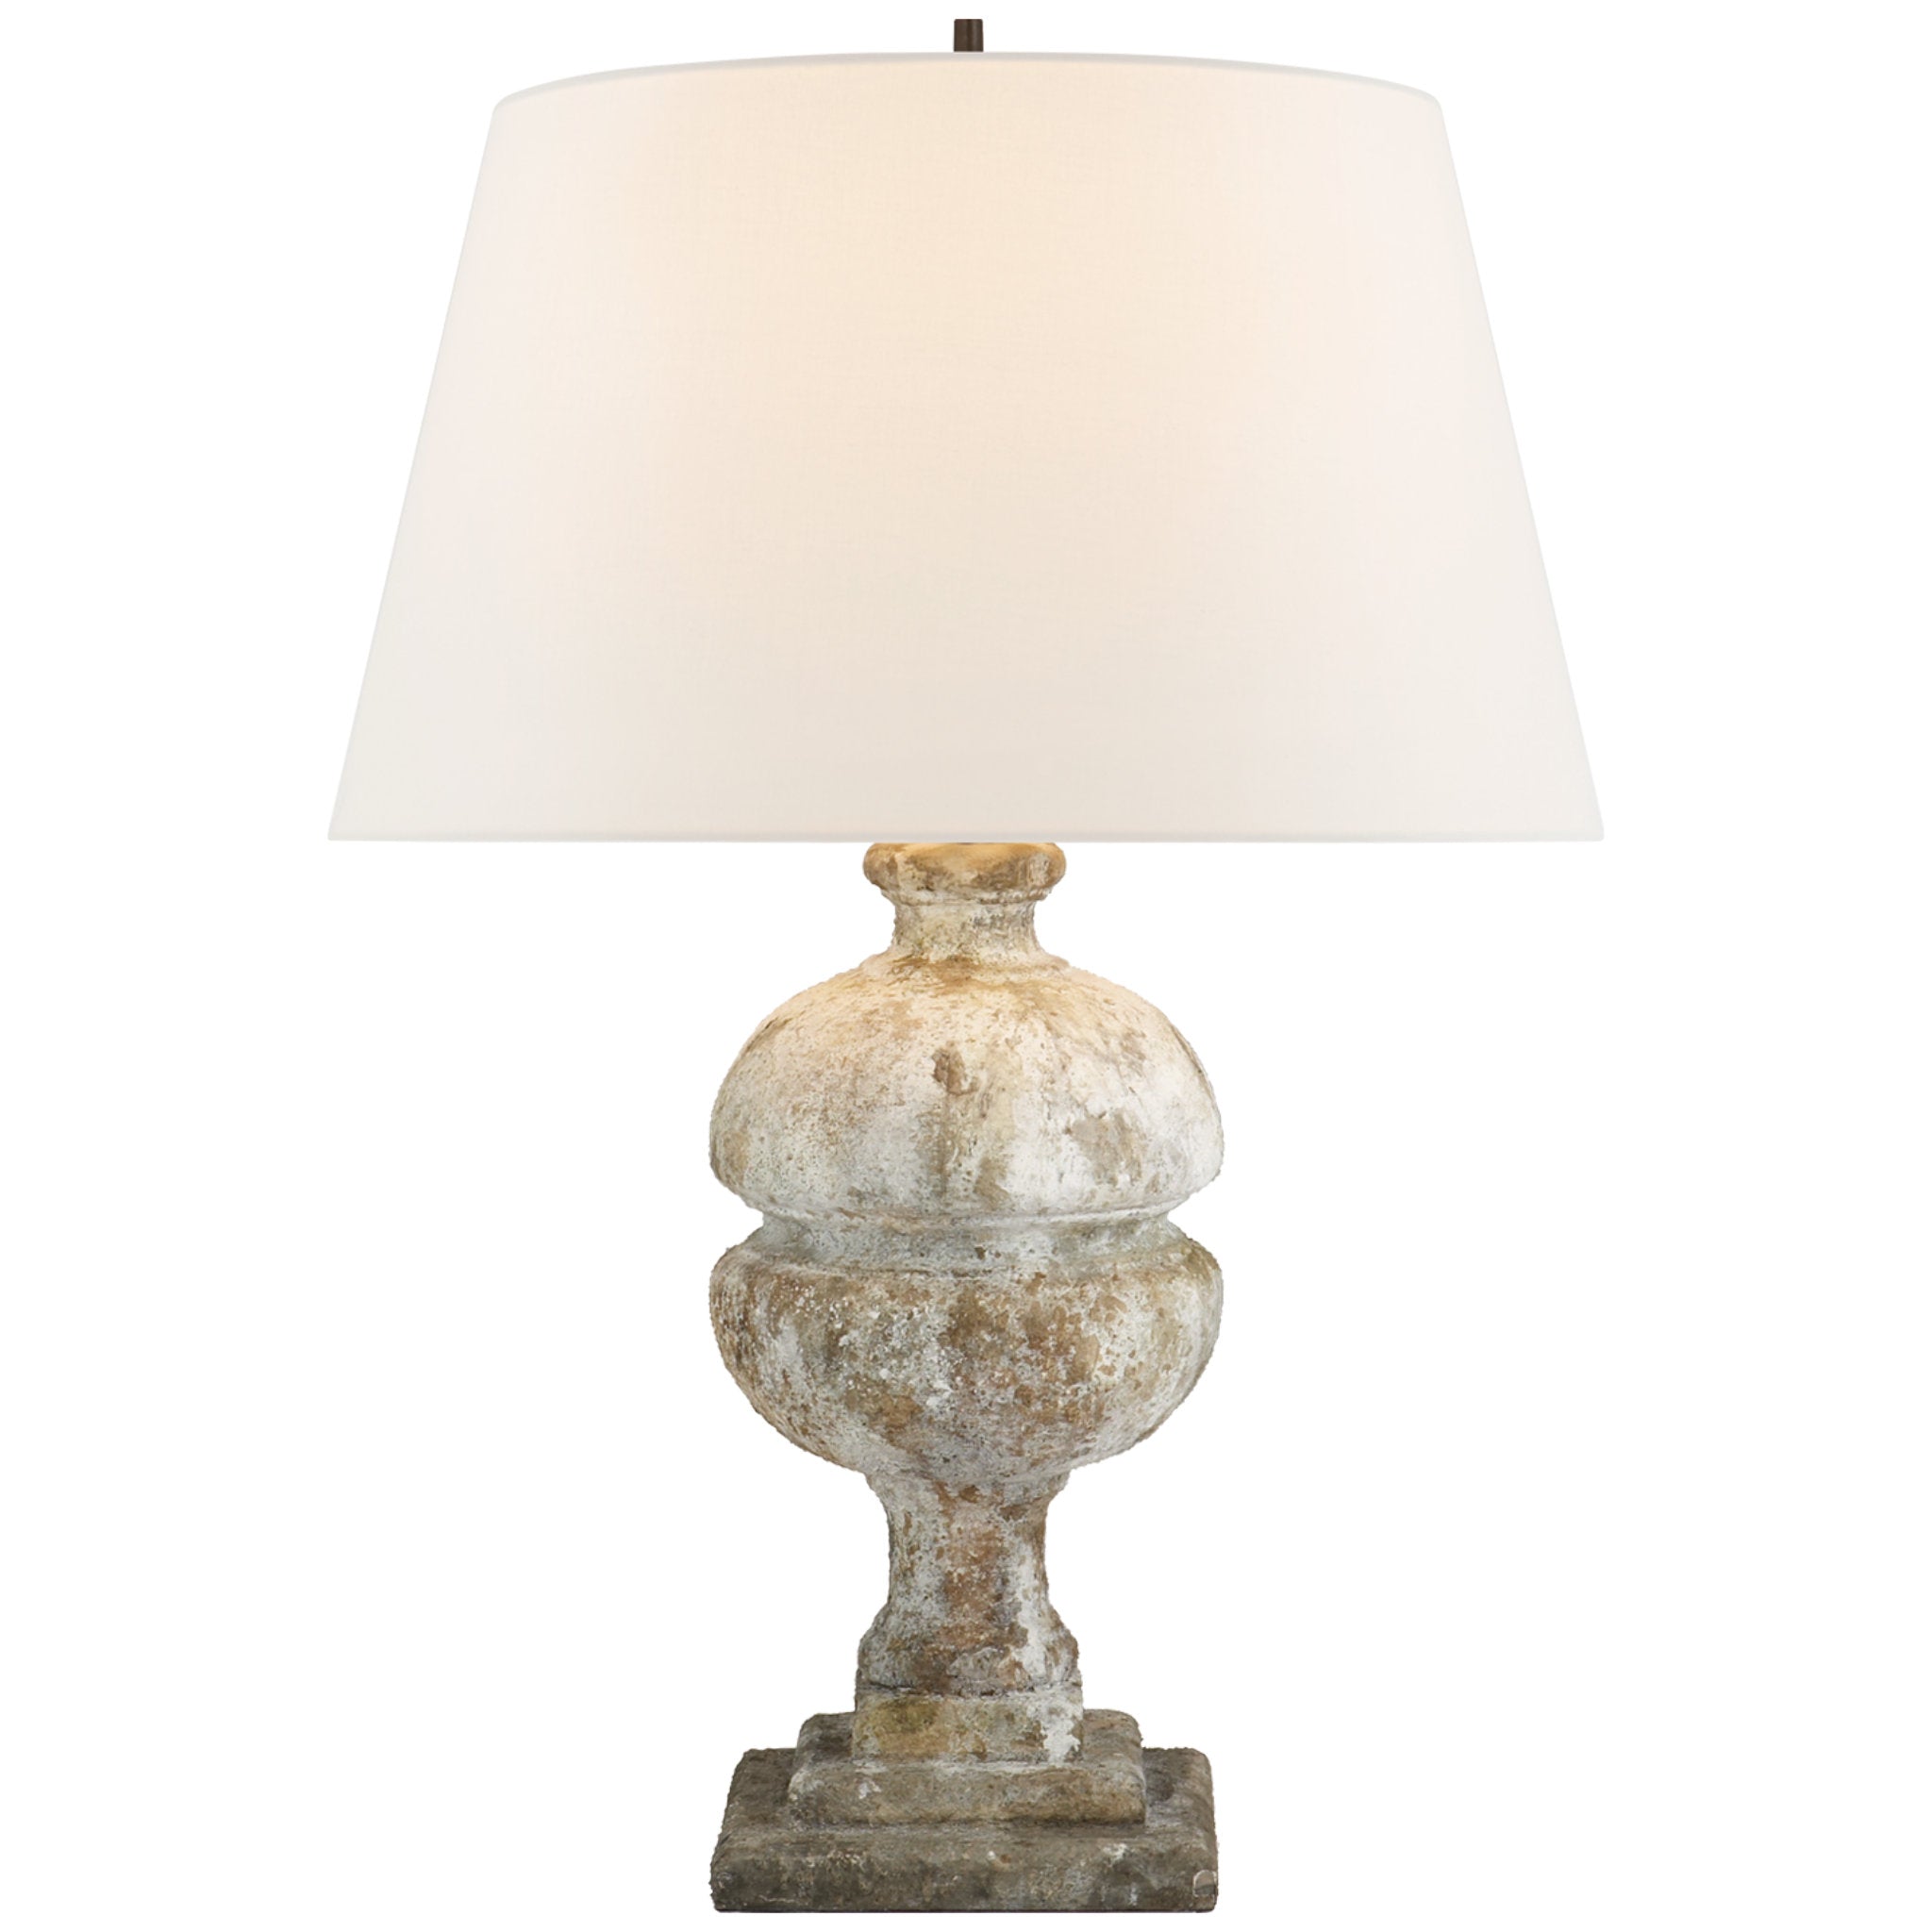 Alexa Hampton Desmond Table Lamp in Garden Stone with Linen Shade